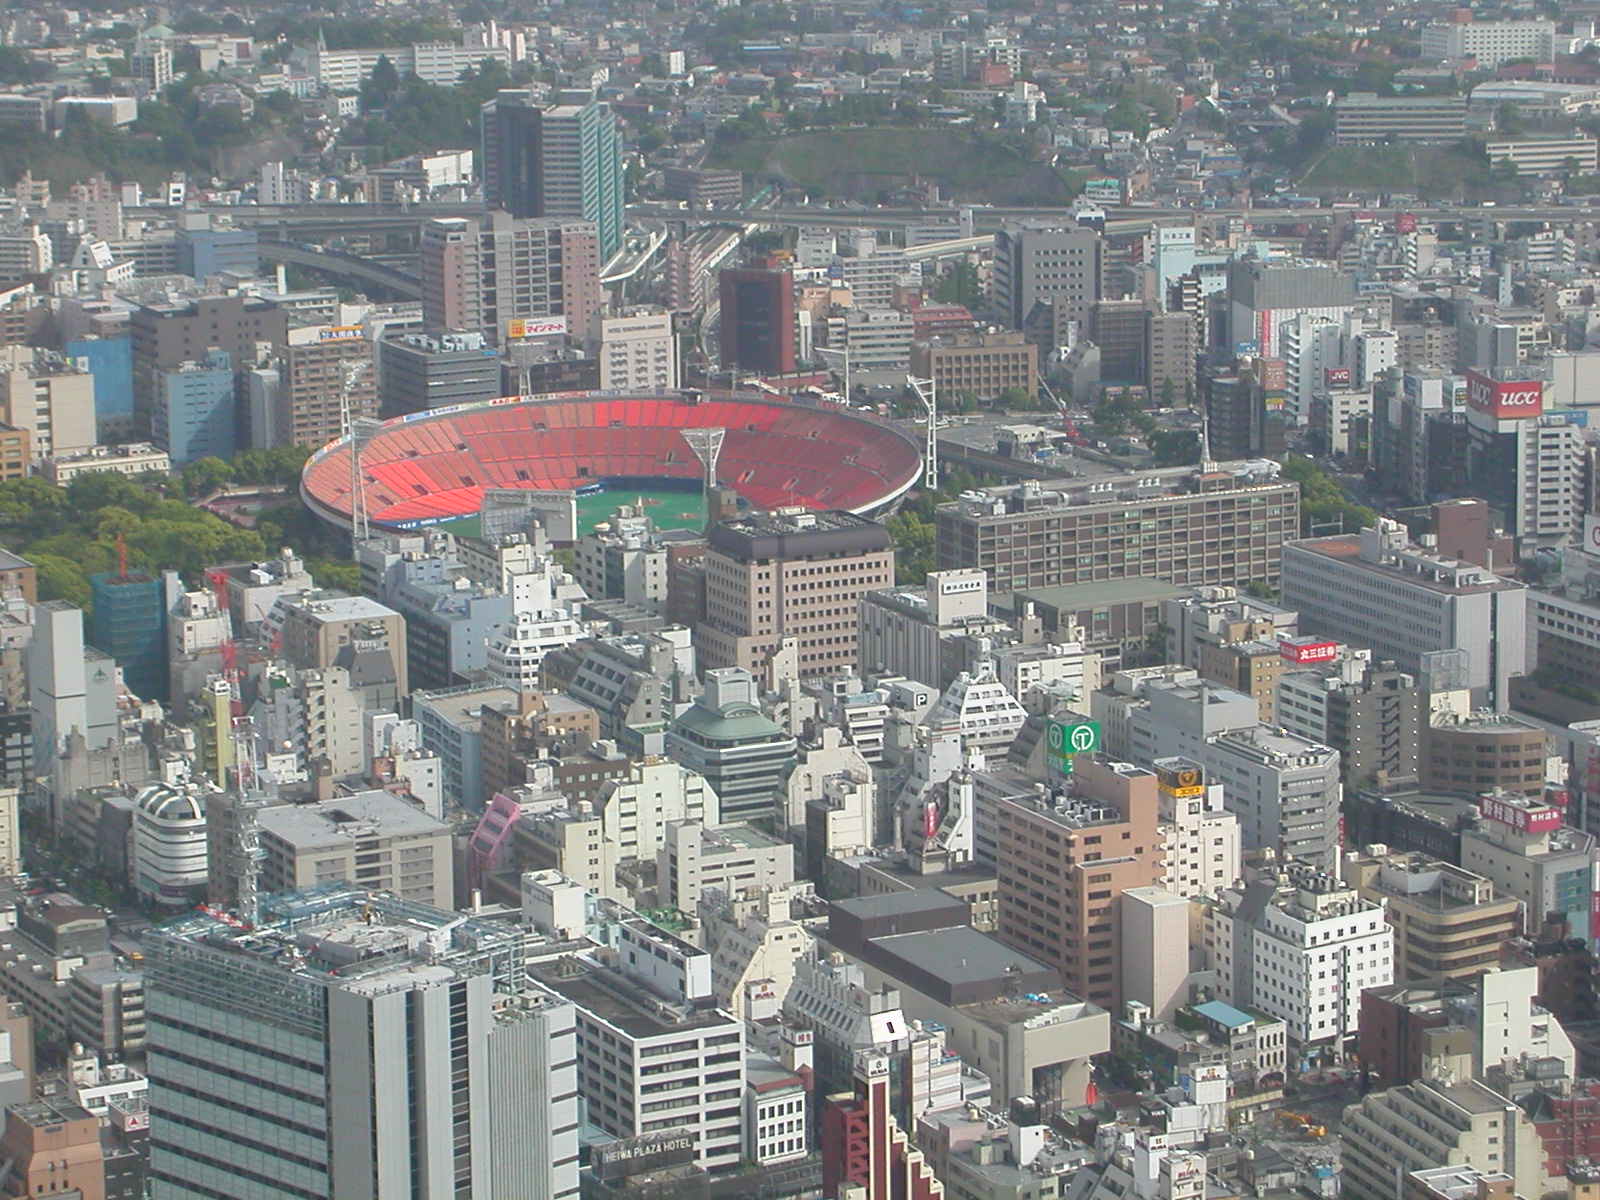 Yokohama View With Baseball Stadium